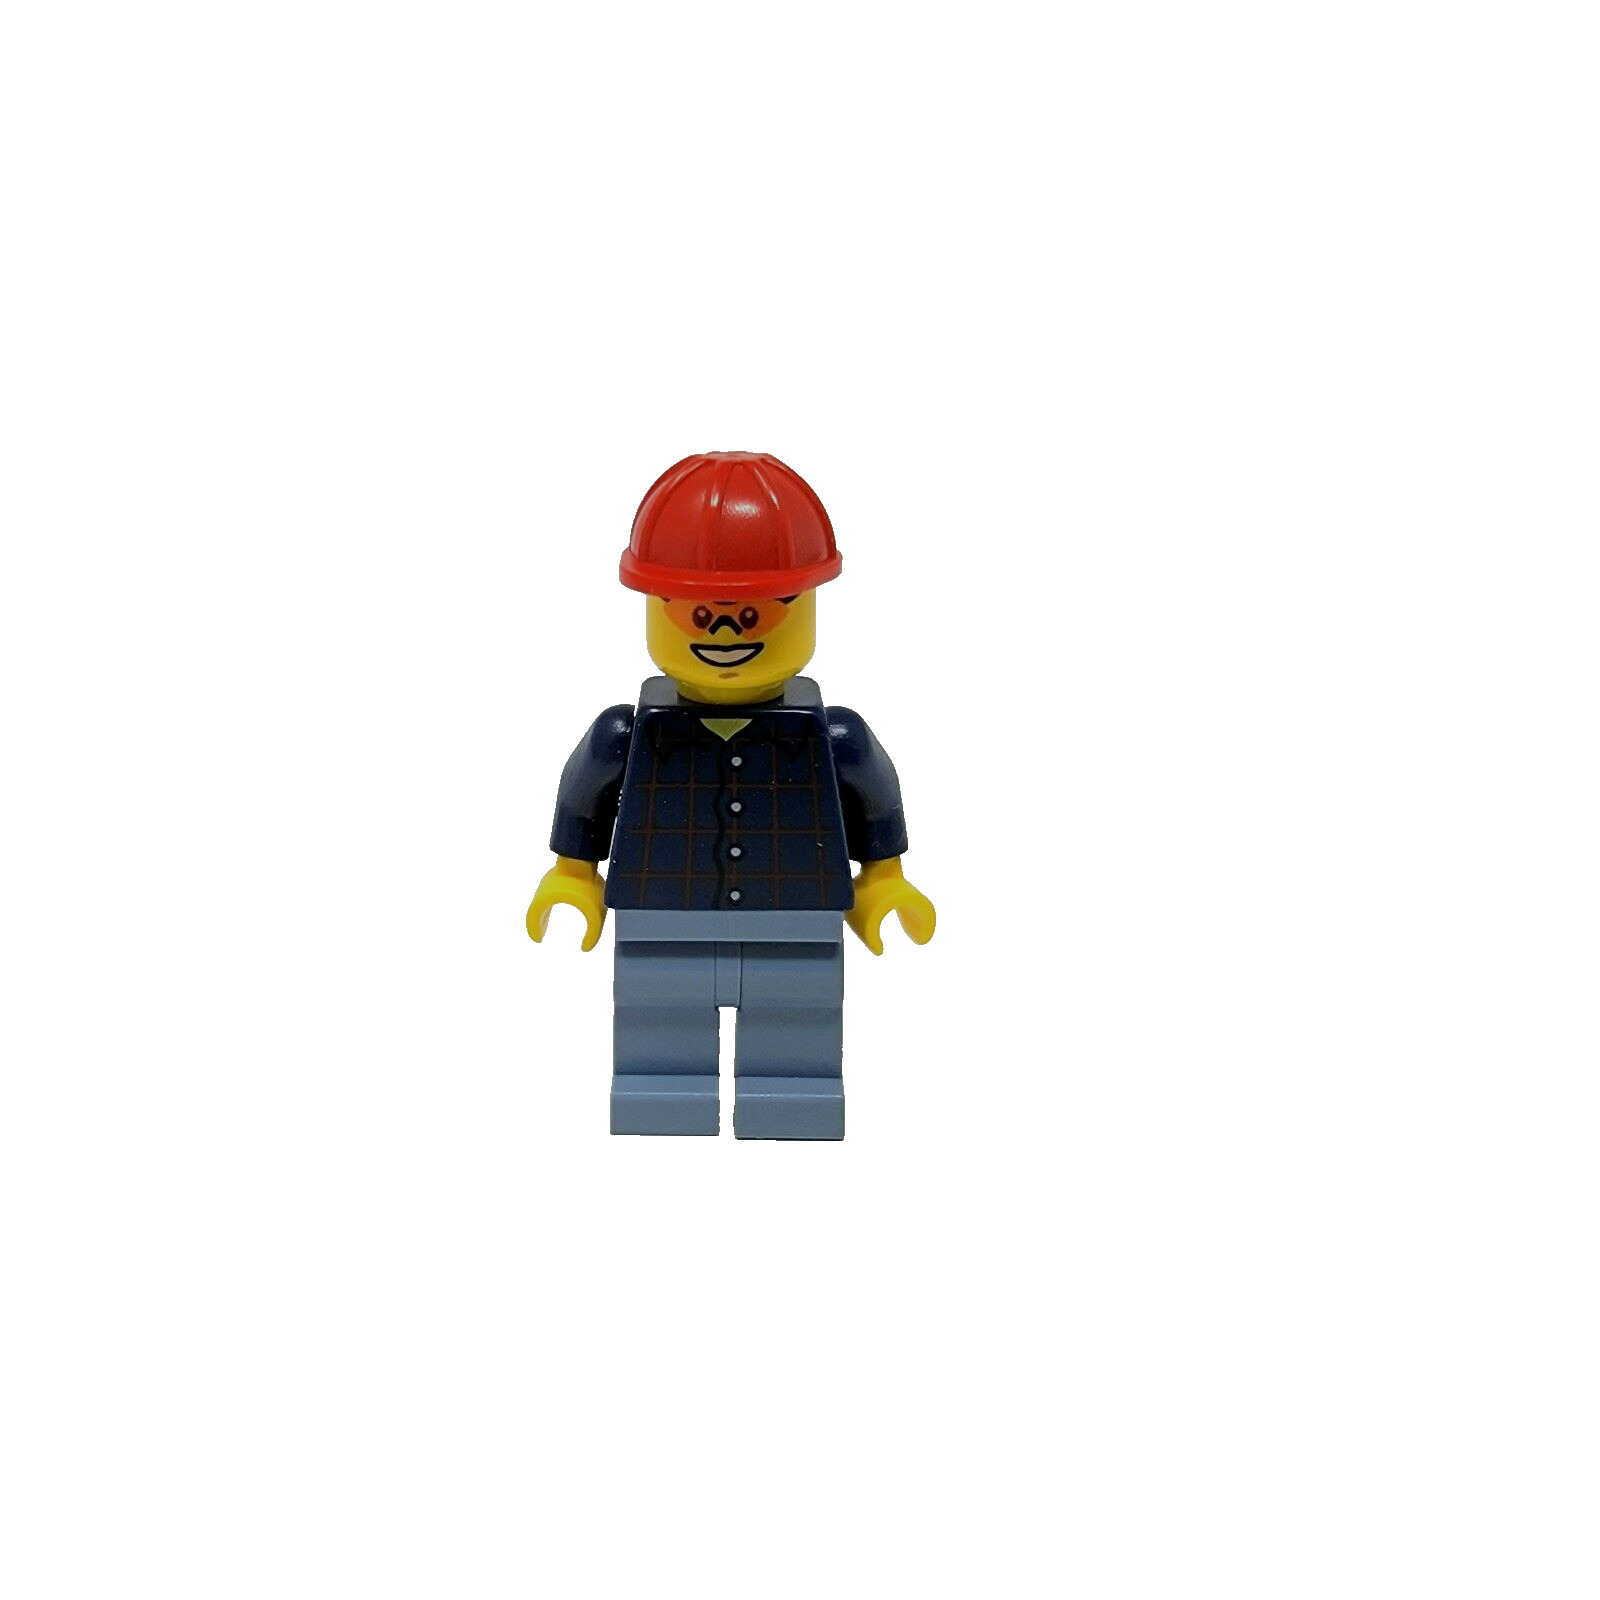 Lego Town City Plaid Button Shirt Red Cap City Mini Figure